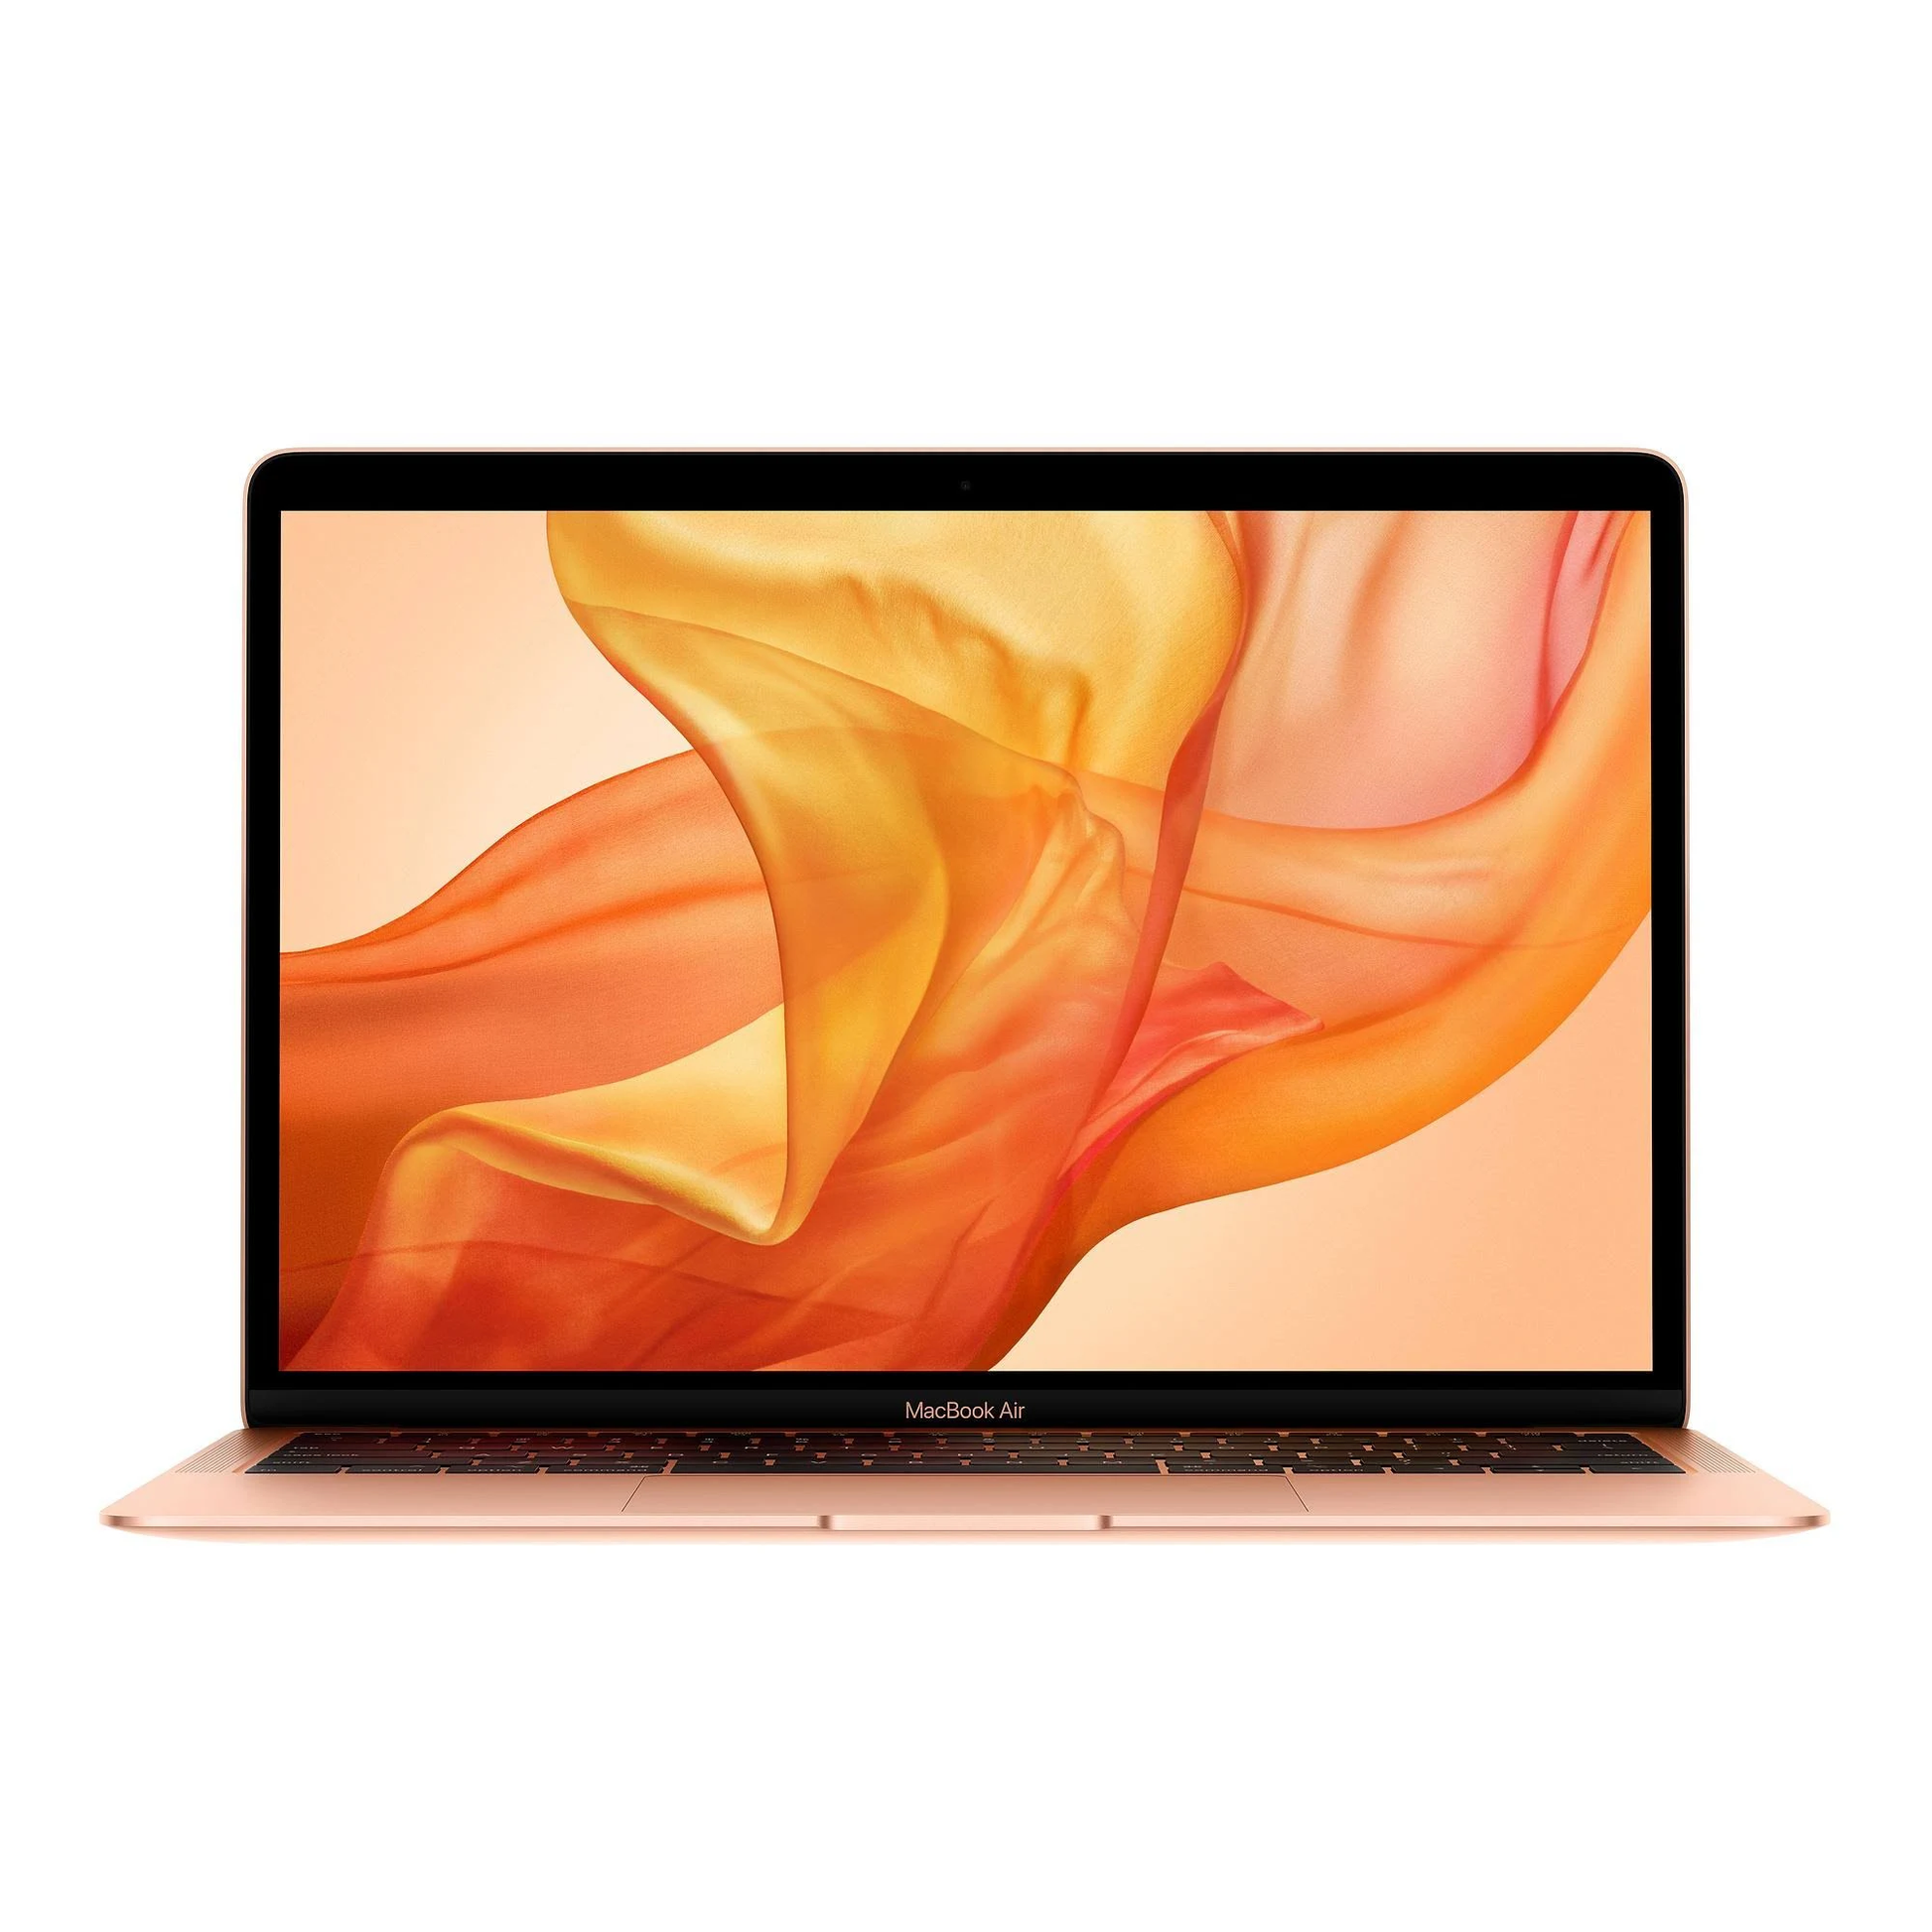 MacBook Air 13 pouce True Tone 2019 i5 1.6GHz - 256Go SSD - 8Go Ram